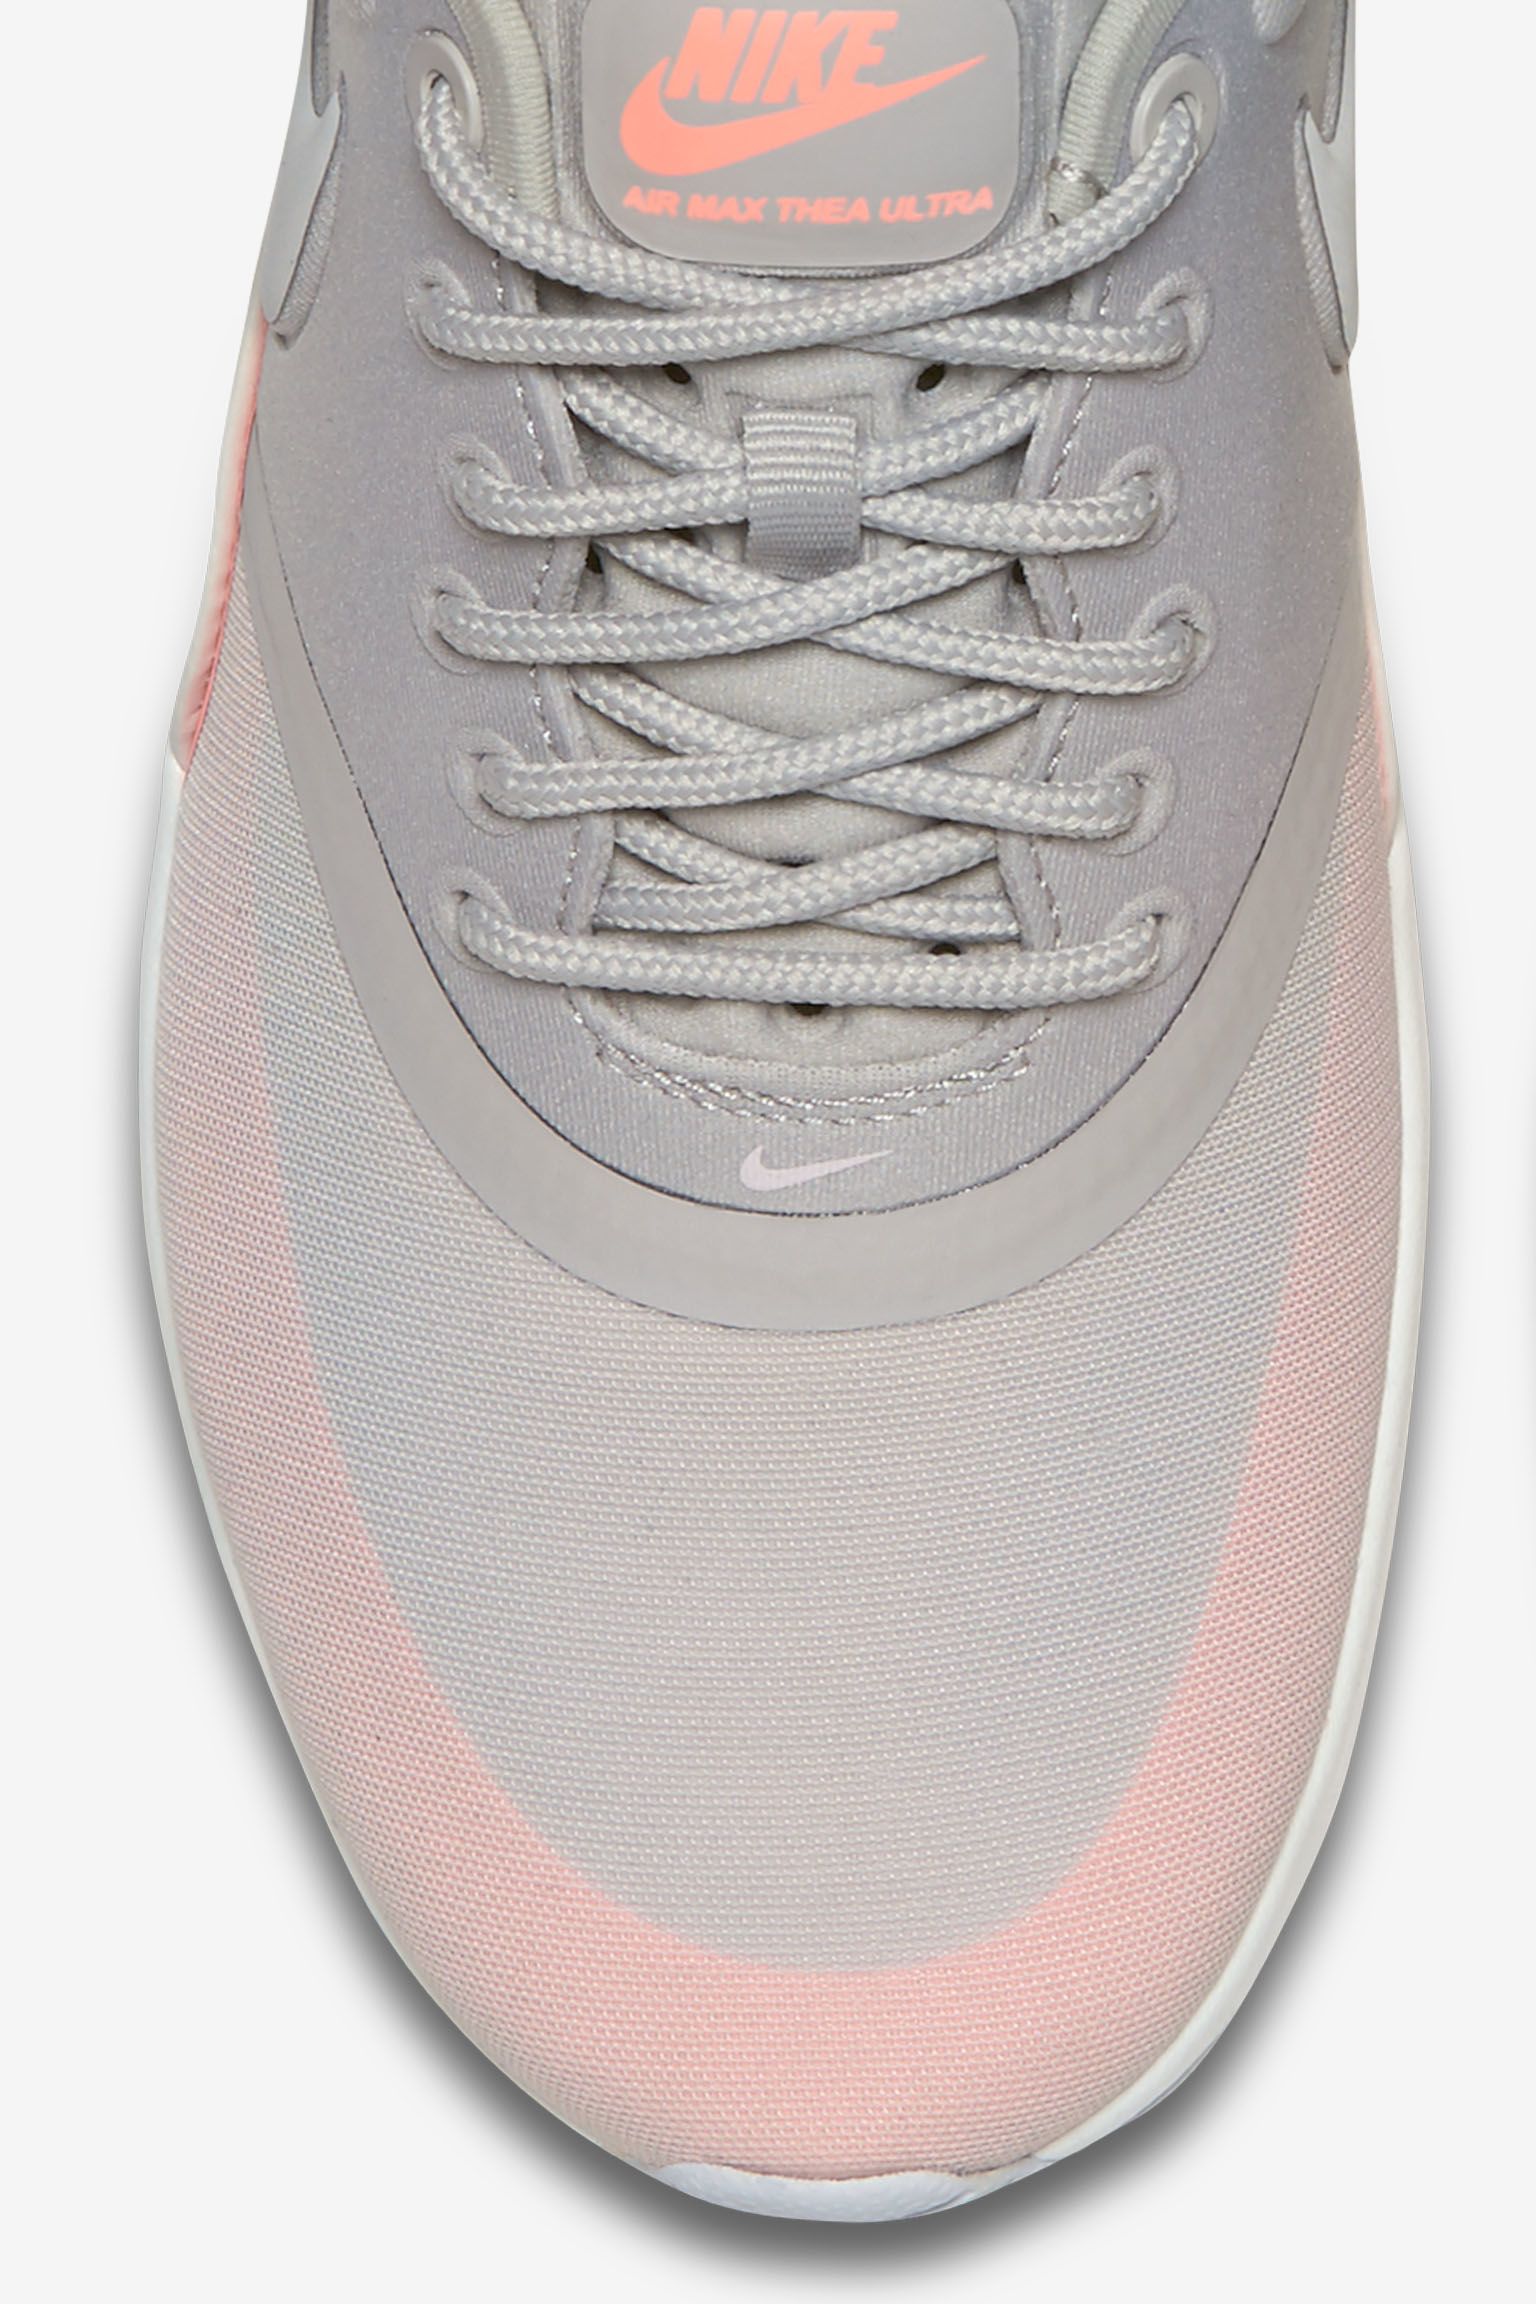 Women's Nike Air Max Ultra 'Iron & Atomic Pink'. Nike SNKRS